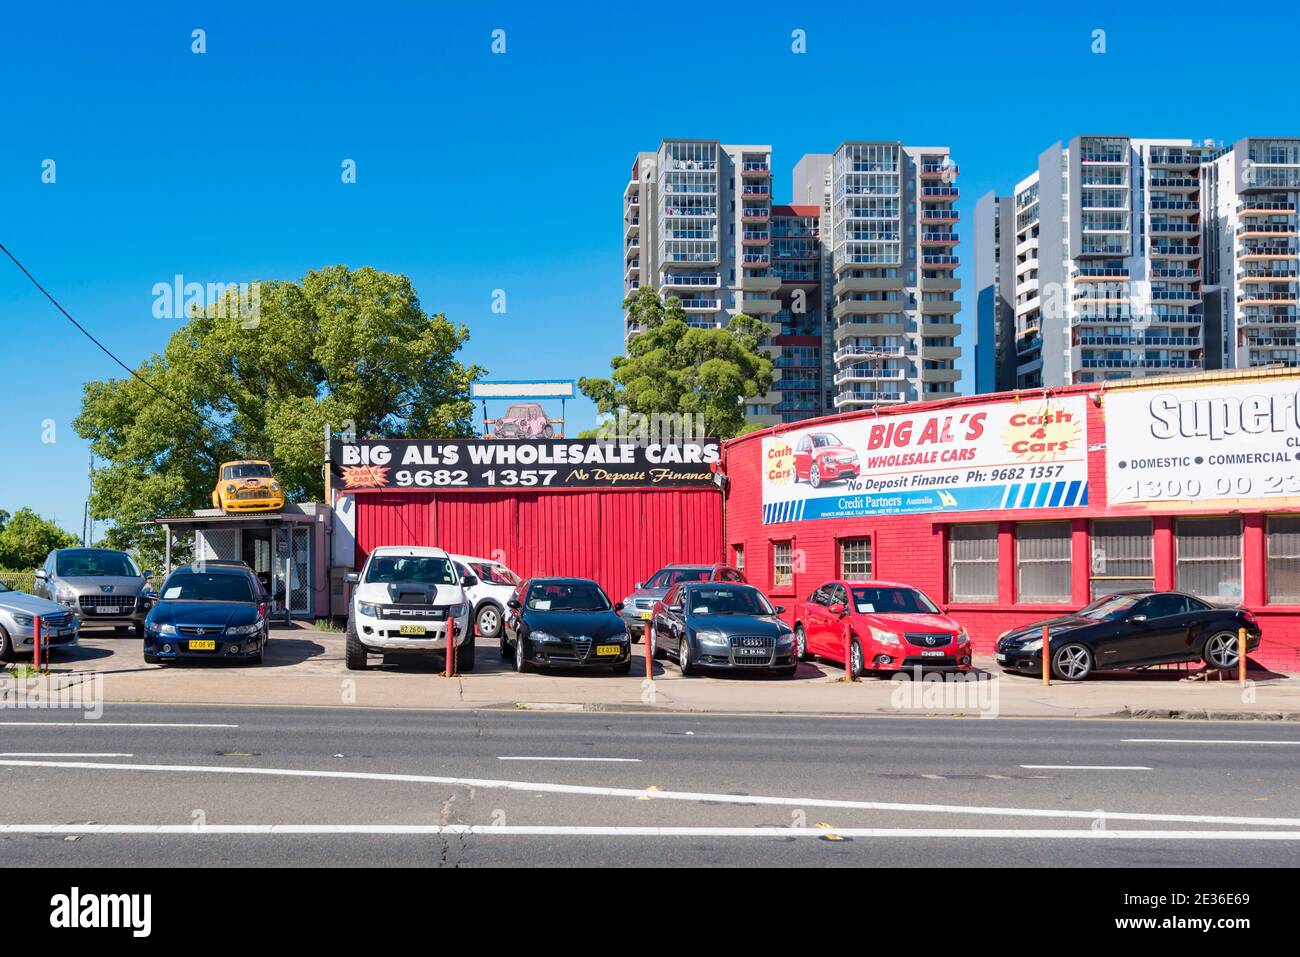 Un pequeño concesionario independiente de coches usados, Big al's, en Parramatta Road (Great Western Highway) en el oeste de Sydney, Australia Foto de stock